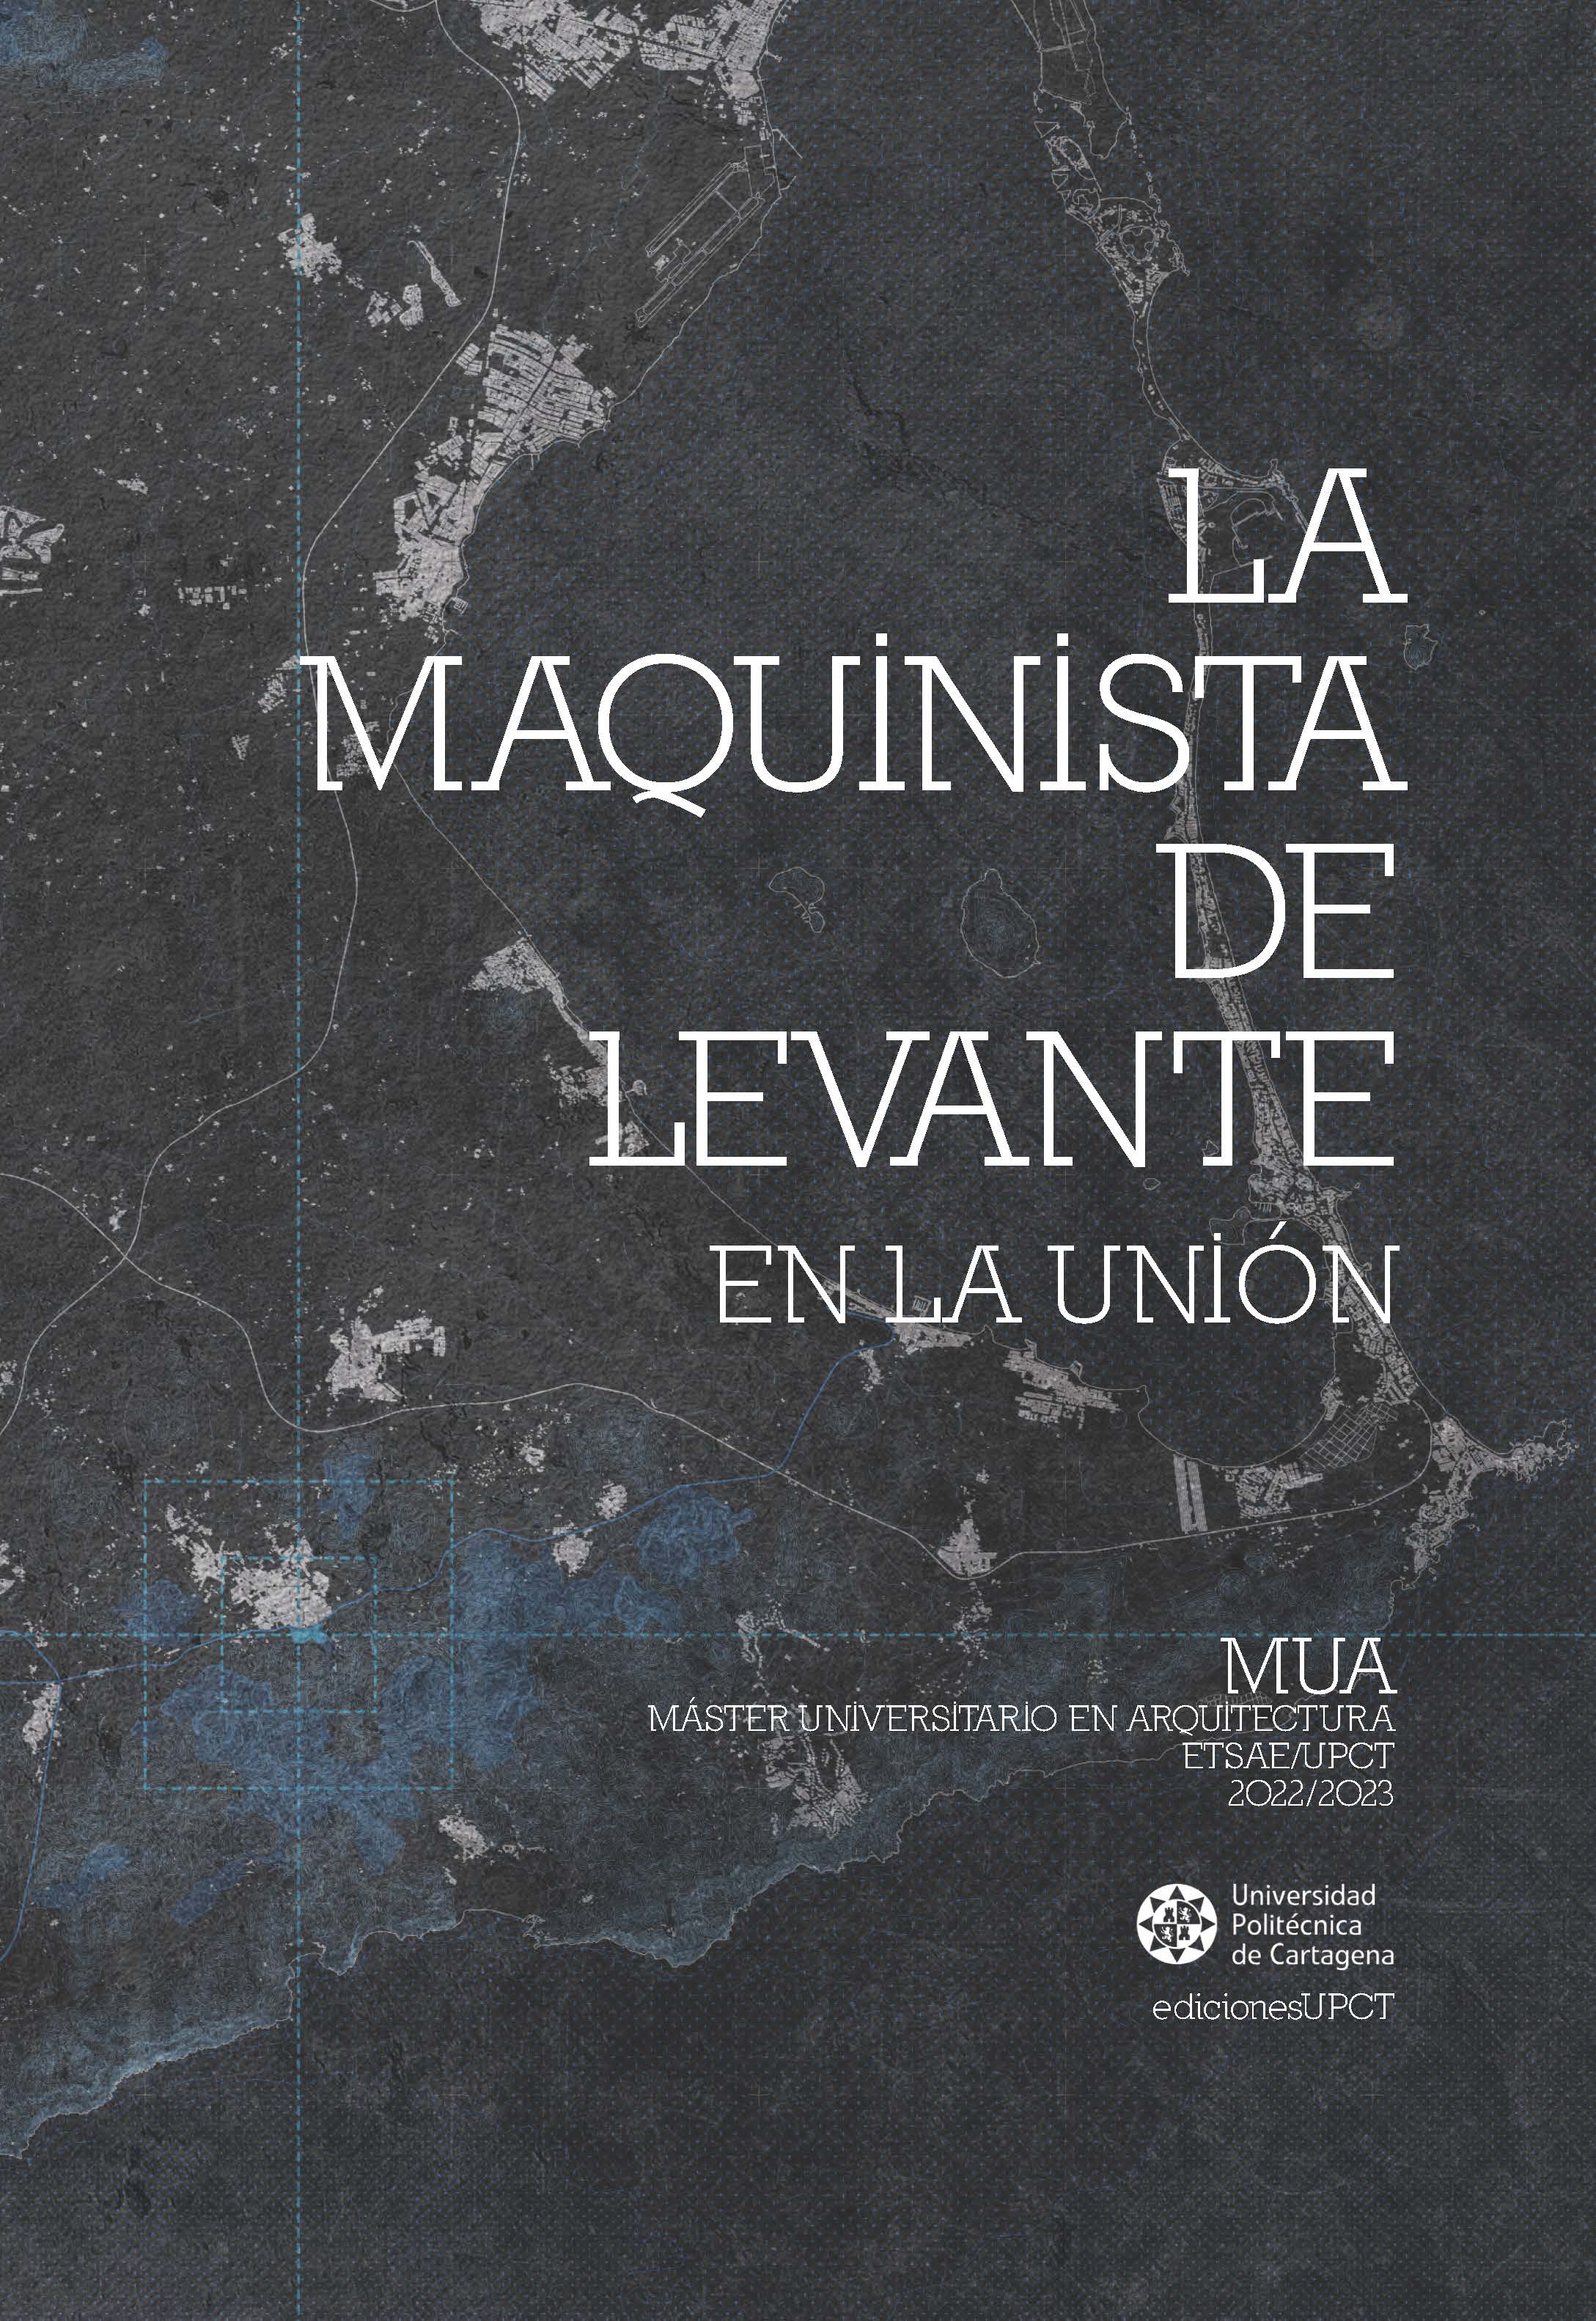 Imagen de portada del libro La Maquinista de Levante en La Unión. Máster Universitario en Arquitectura. Curso 2022/2023. ETSAE/UPCT